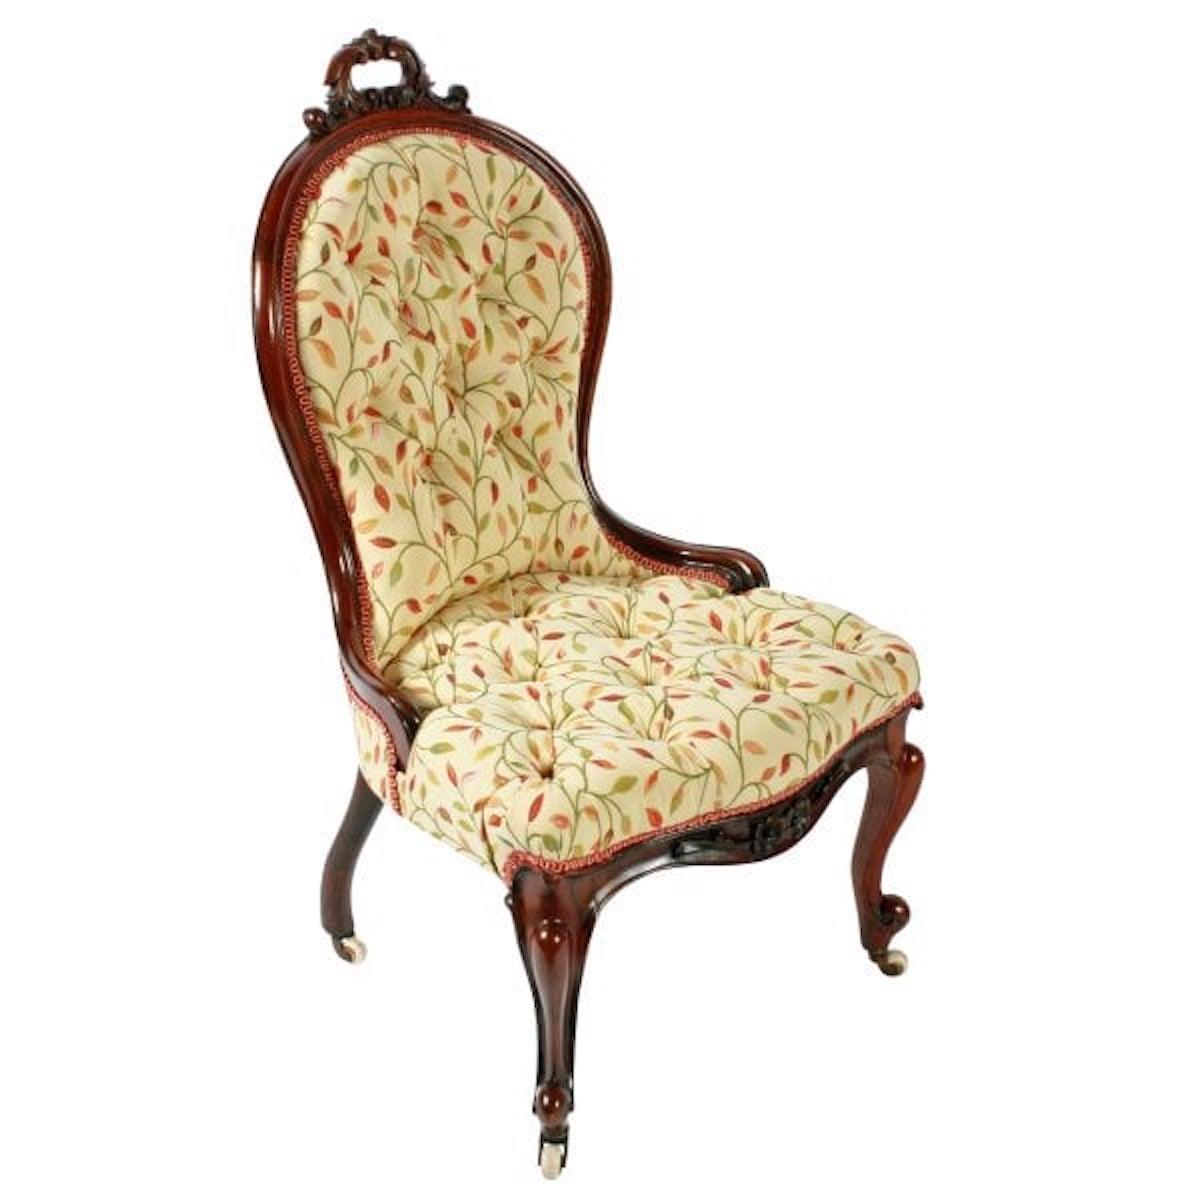 Fauteuil de dame en bois de rose victorien du XIXe siècle.

La chaise a un dossier en forme avec une décoration sculptée d'acanthes en forme de volutes et une poignée de main sur le dessus.

Les pieds avant sont en forme de cabriole avec des